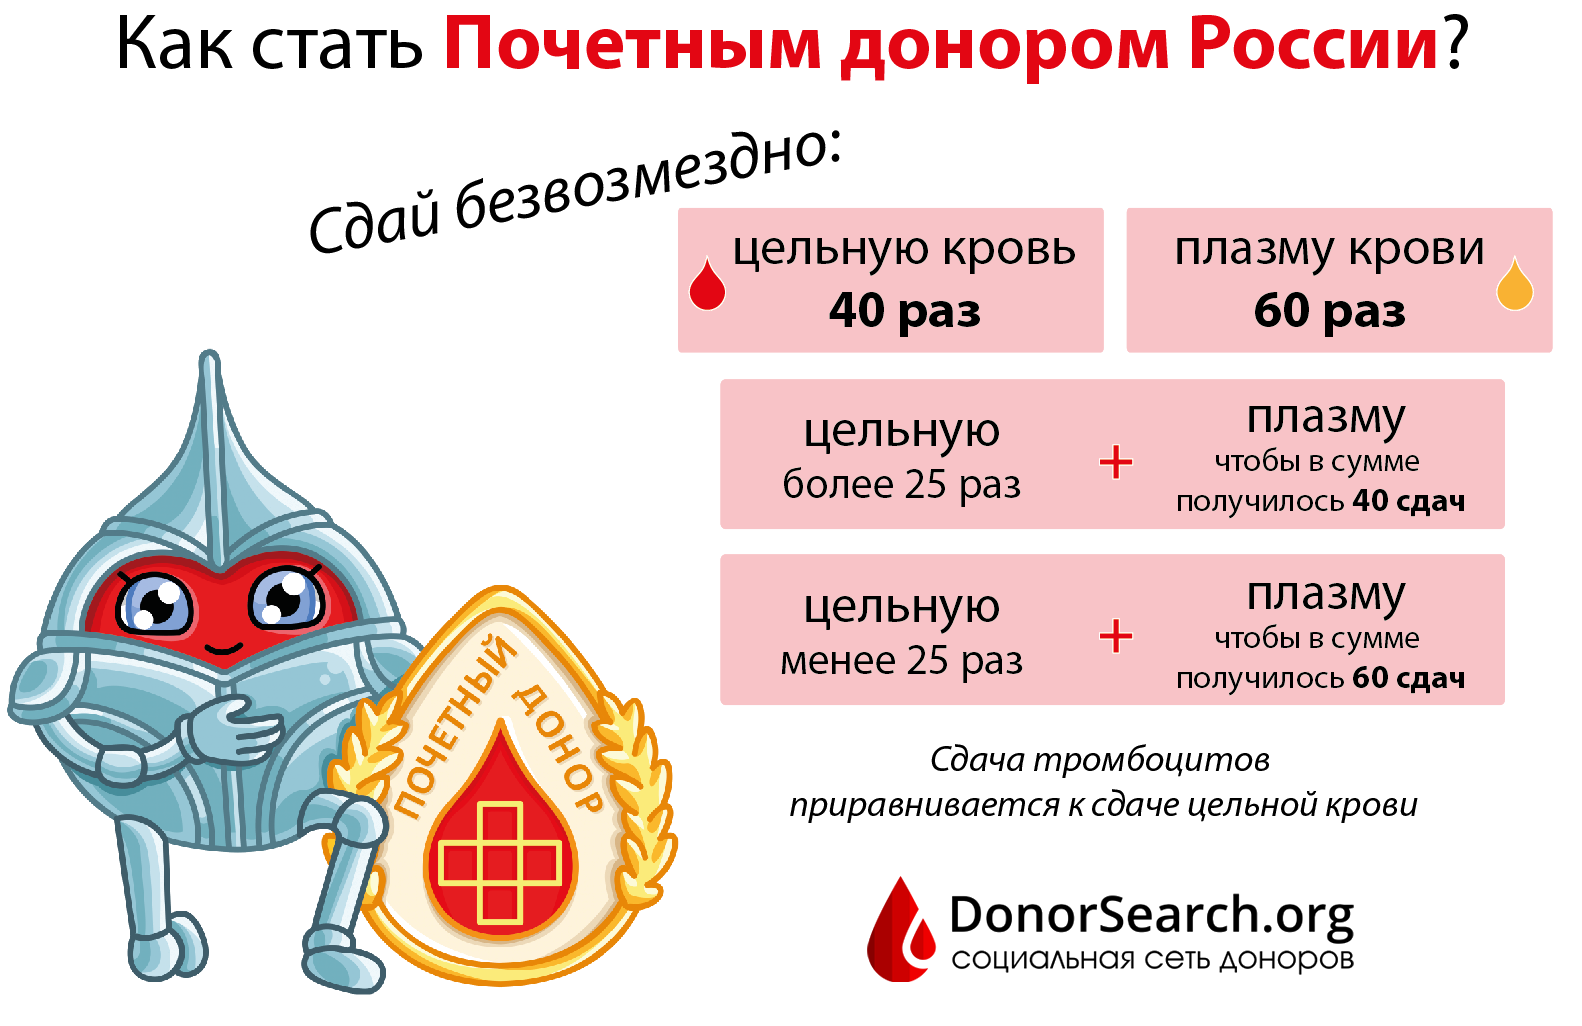 Сколько почетных доноров москвы. Как стать Почётным донором России. Сколько нужно сдать крови чтобы стать почетным донором. Сколько нужно сдать кровь для почетного донора. Сколько раз нужно сдать кровь чтобы стать почетным донором.